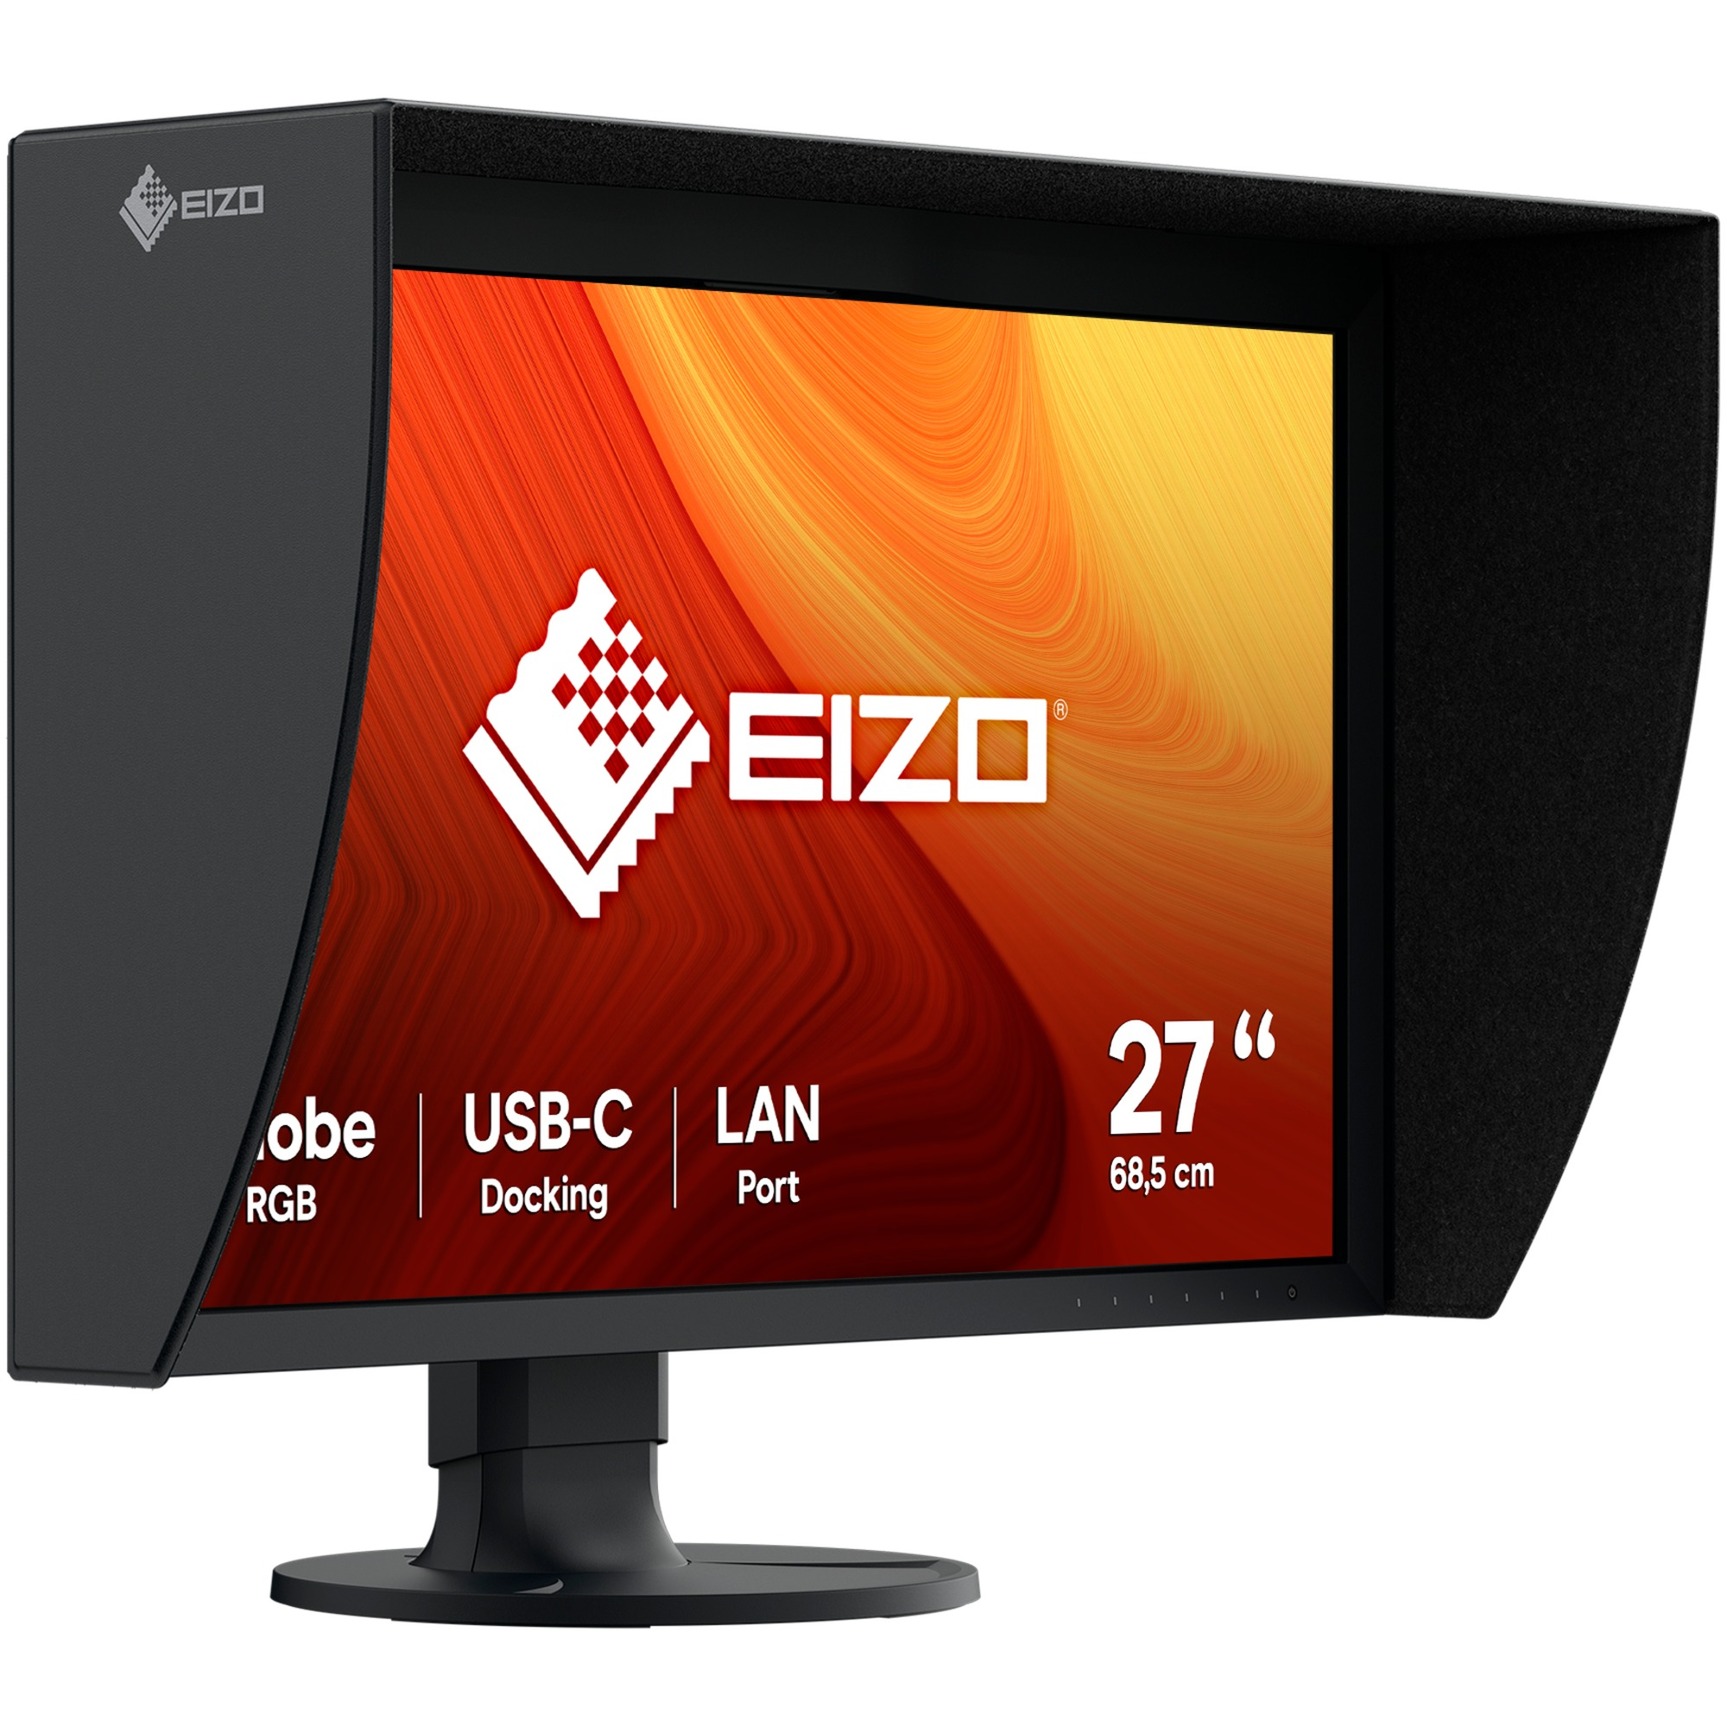 eizo coloredge cg2700s monitor pc 68,6 cm (27) 2560 x 1440 pixel wide quad hd lcd nero rosso uomo